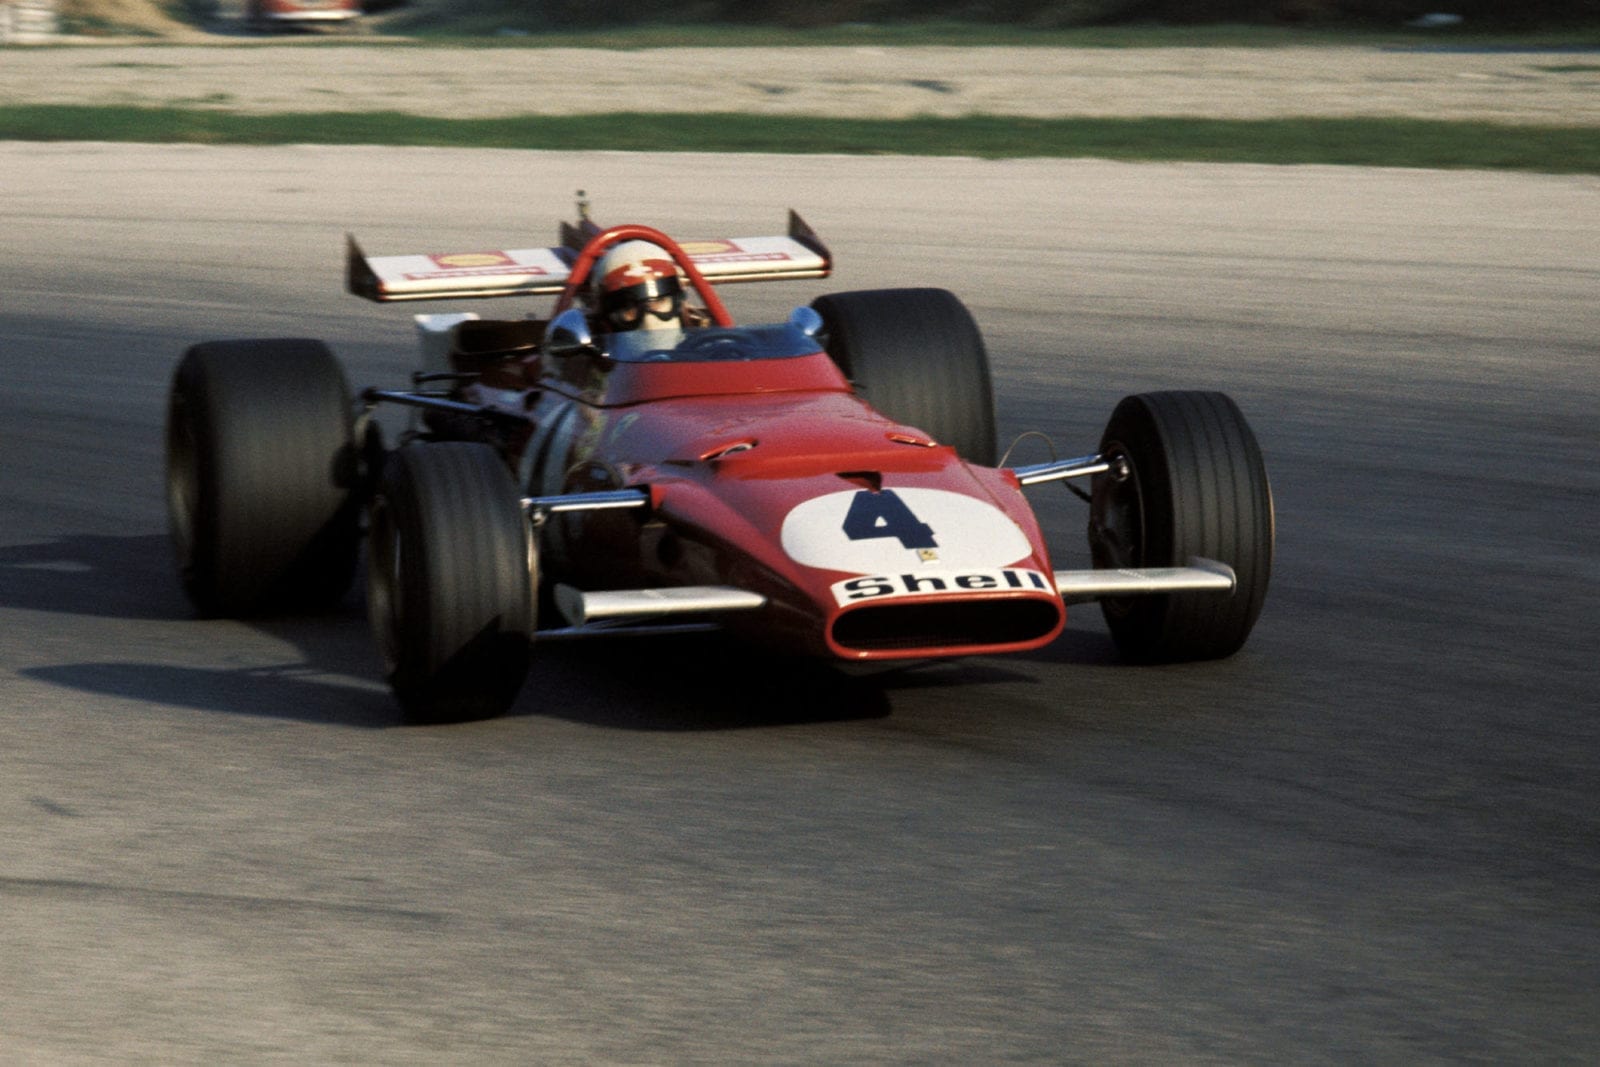 Clay Regazonni driving for Ferrari at the 1970 Italian Grand Prix